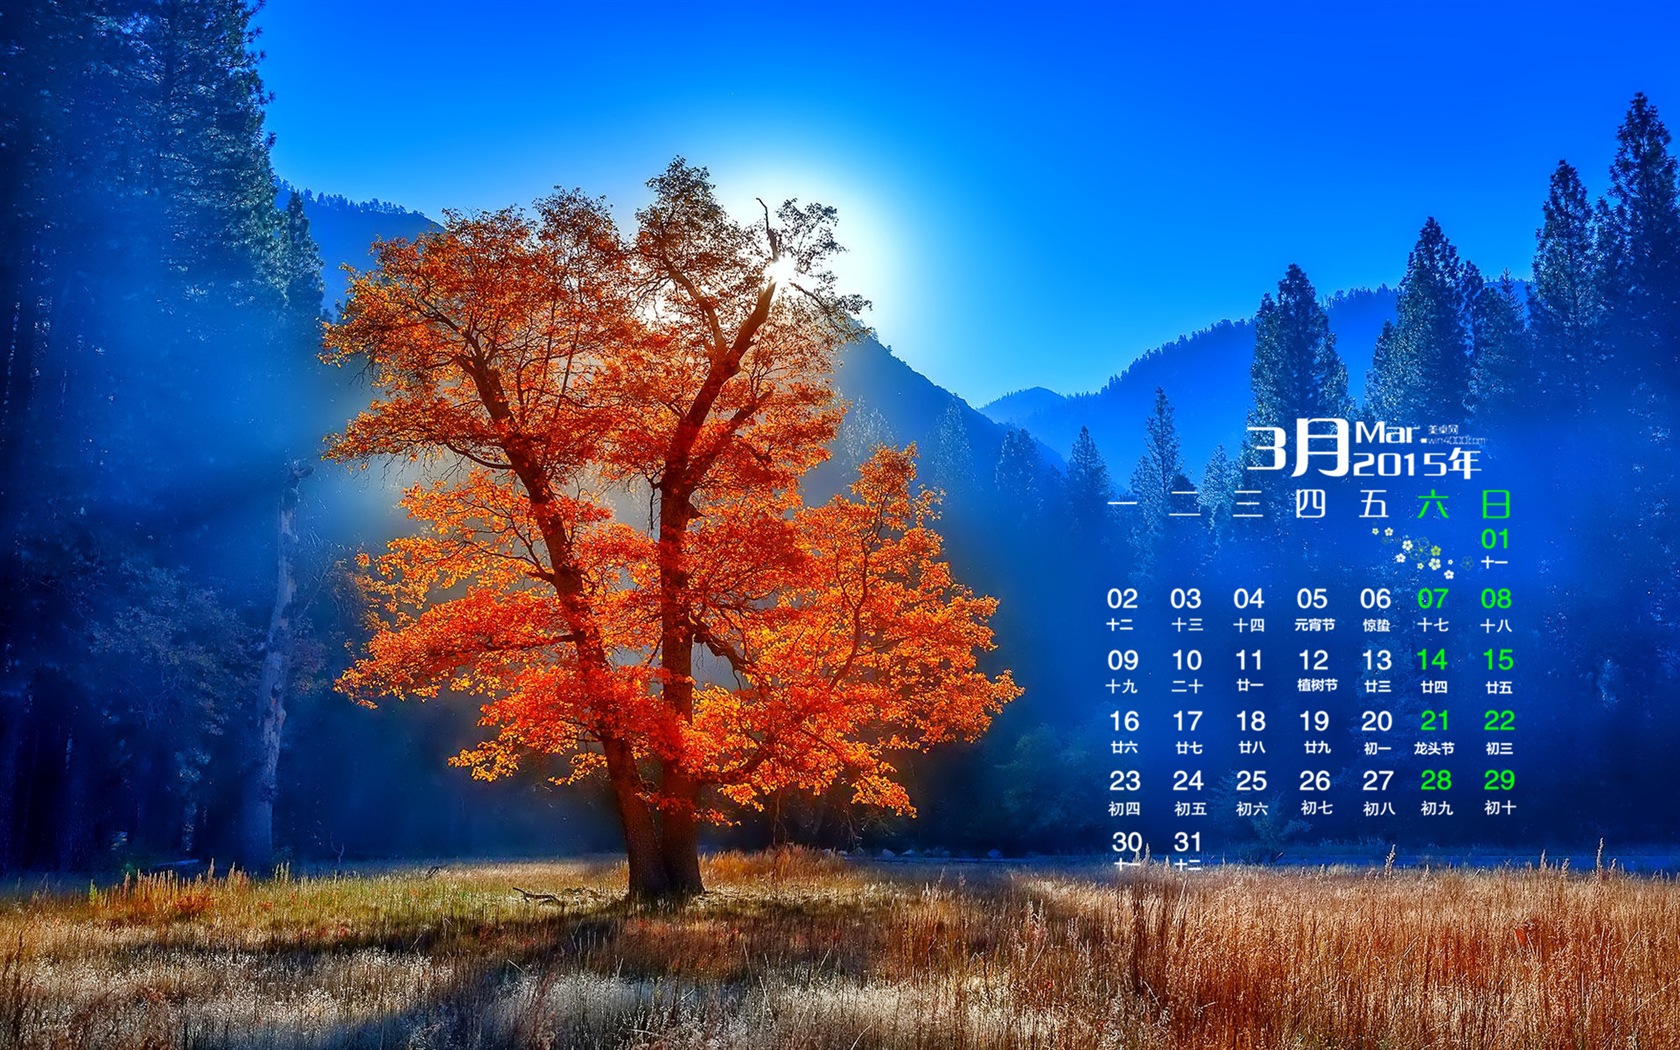 March 2015 Calendar wallpaper (1) #16 - 1680x1050